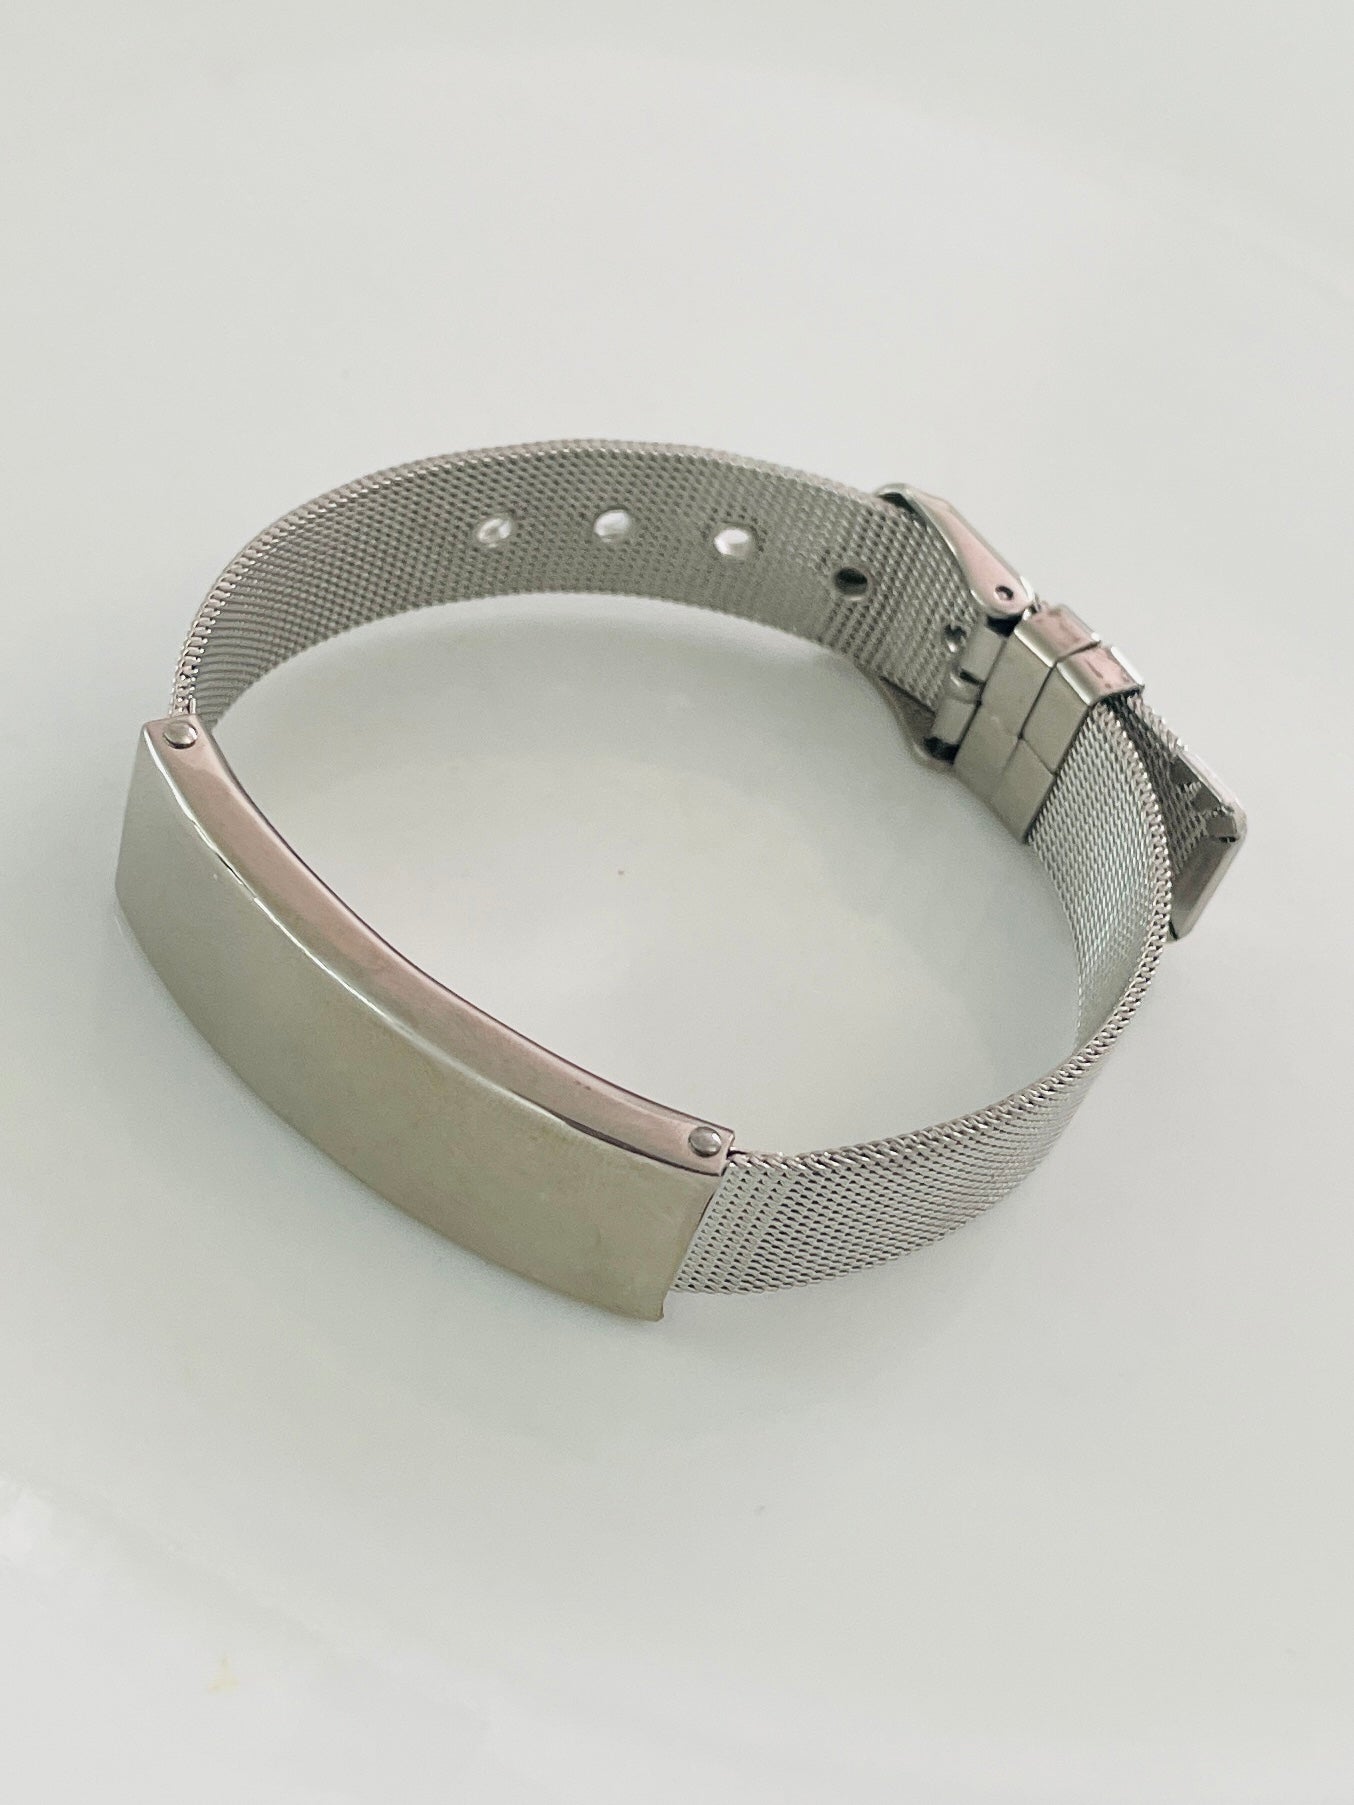 Silver men's belt bracelet